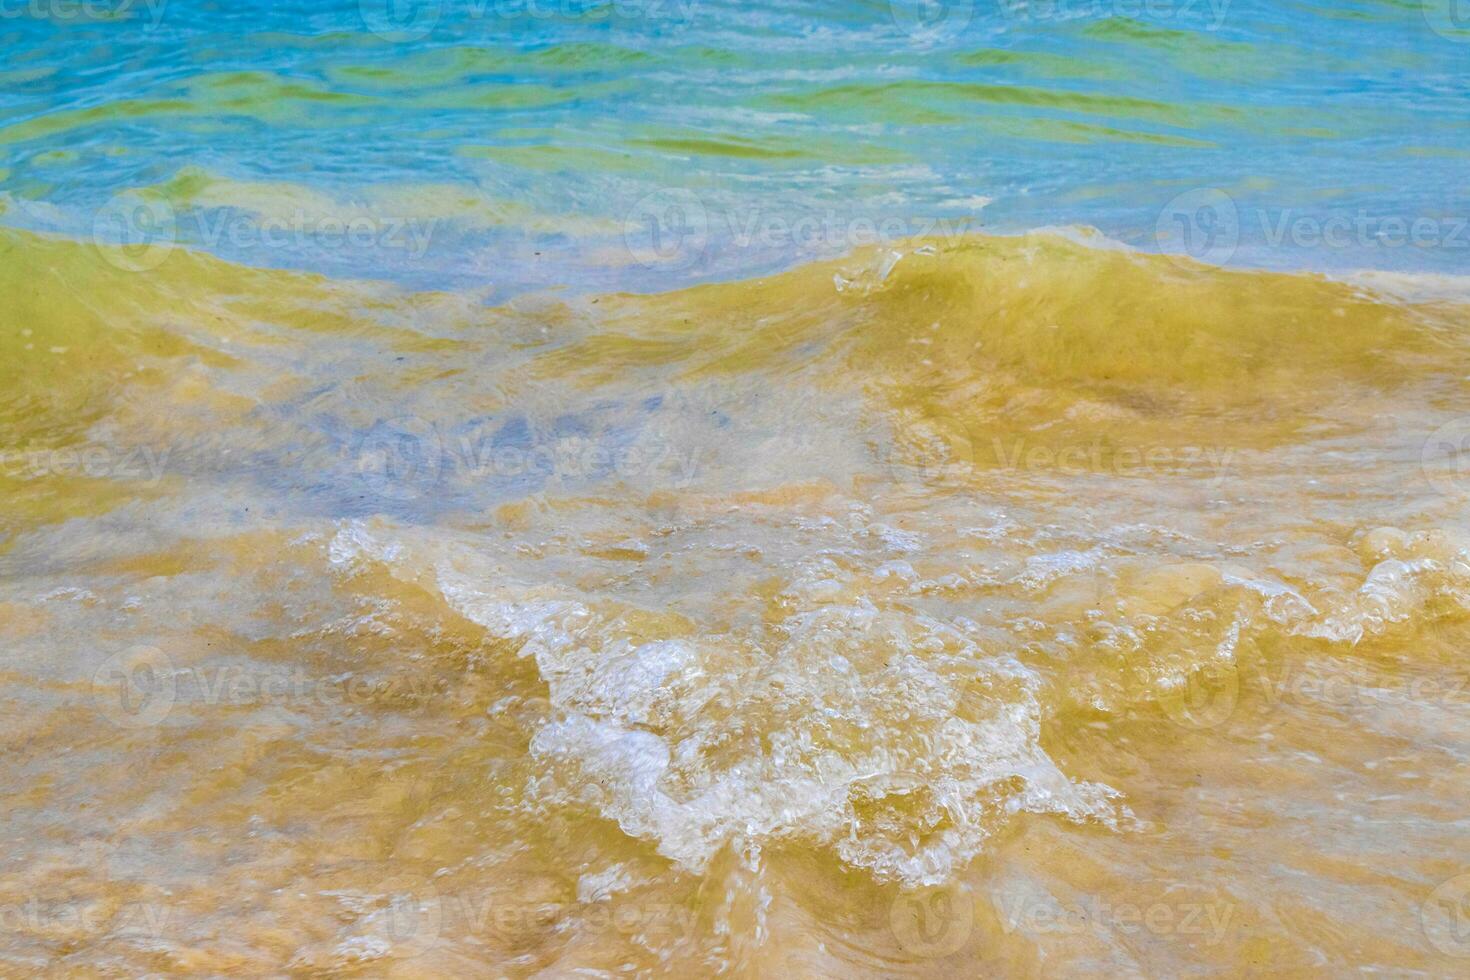 vagues à la plage tropicale mer des caraïbes eau turquoise claire mexique. photo